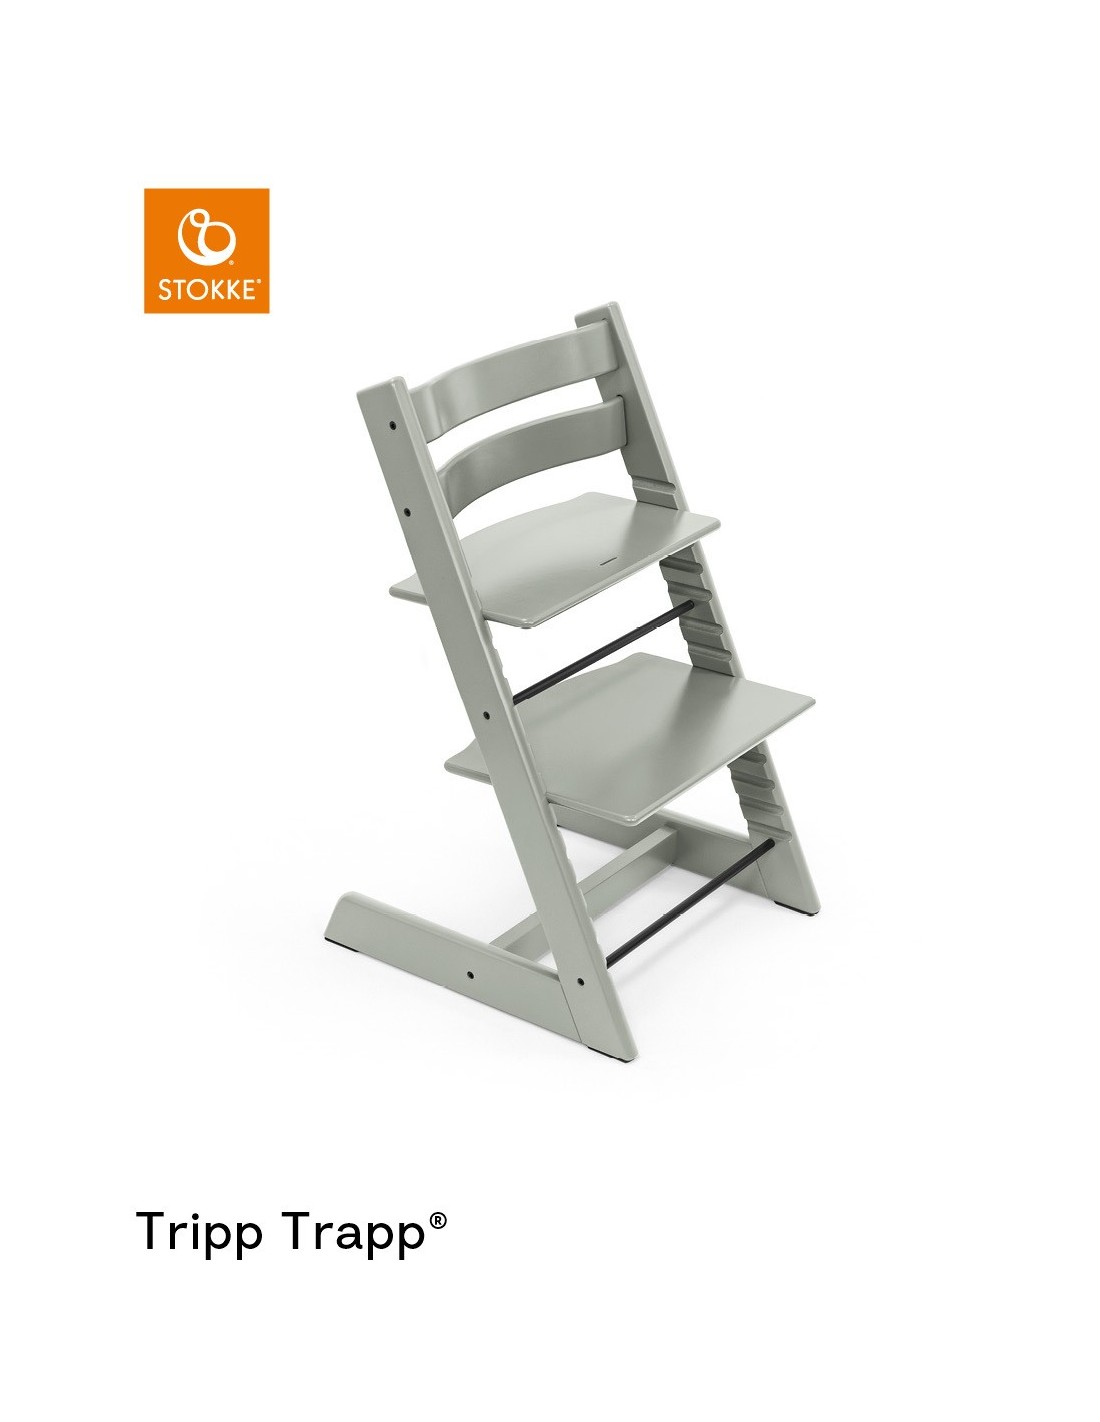 Cómo colocar la funda o cojín de la trona Stokke Tripp Trapp